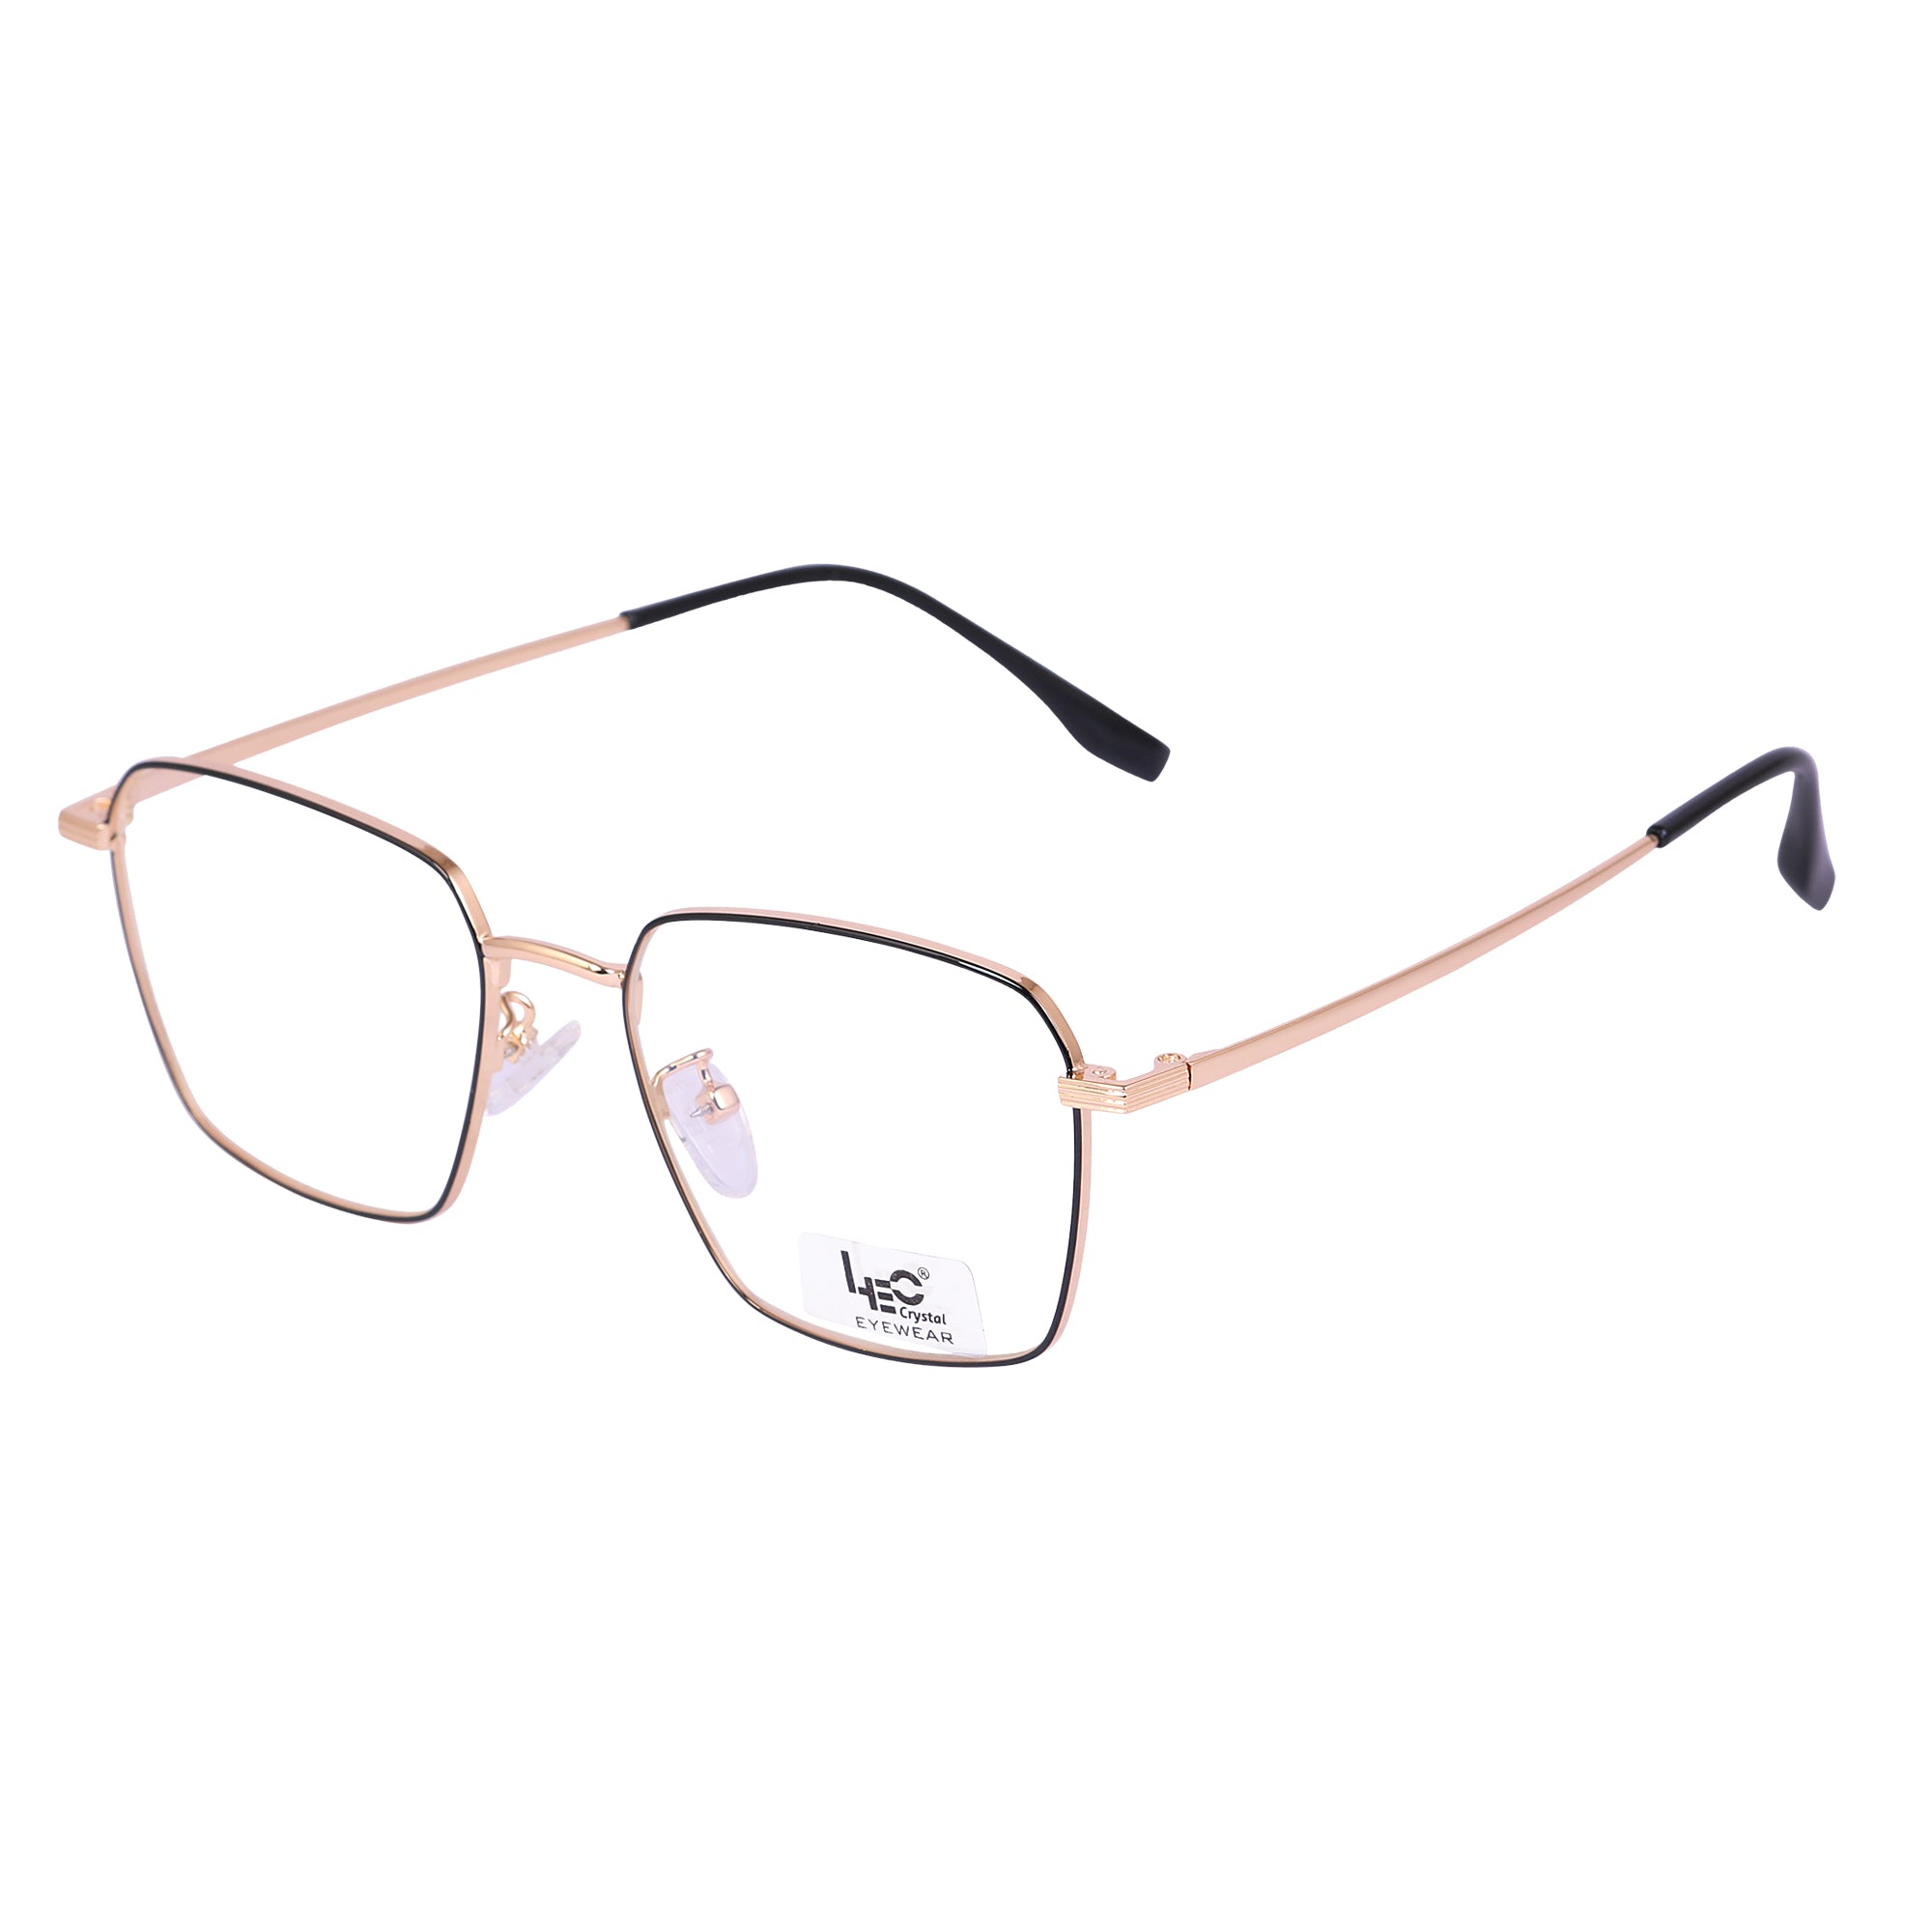 Black & Gold Rimmed Square Metal Eyeglasses - L35006